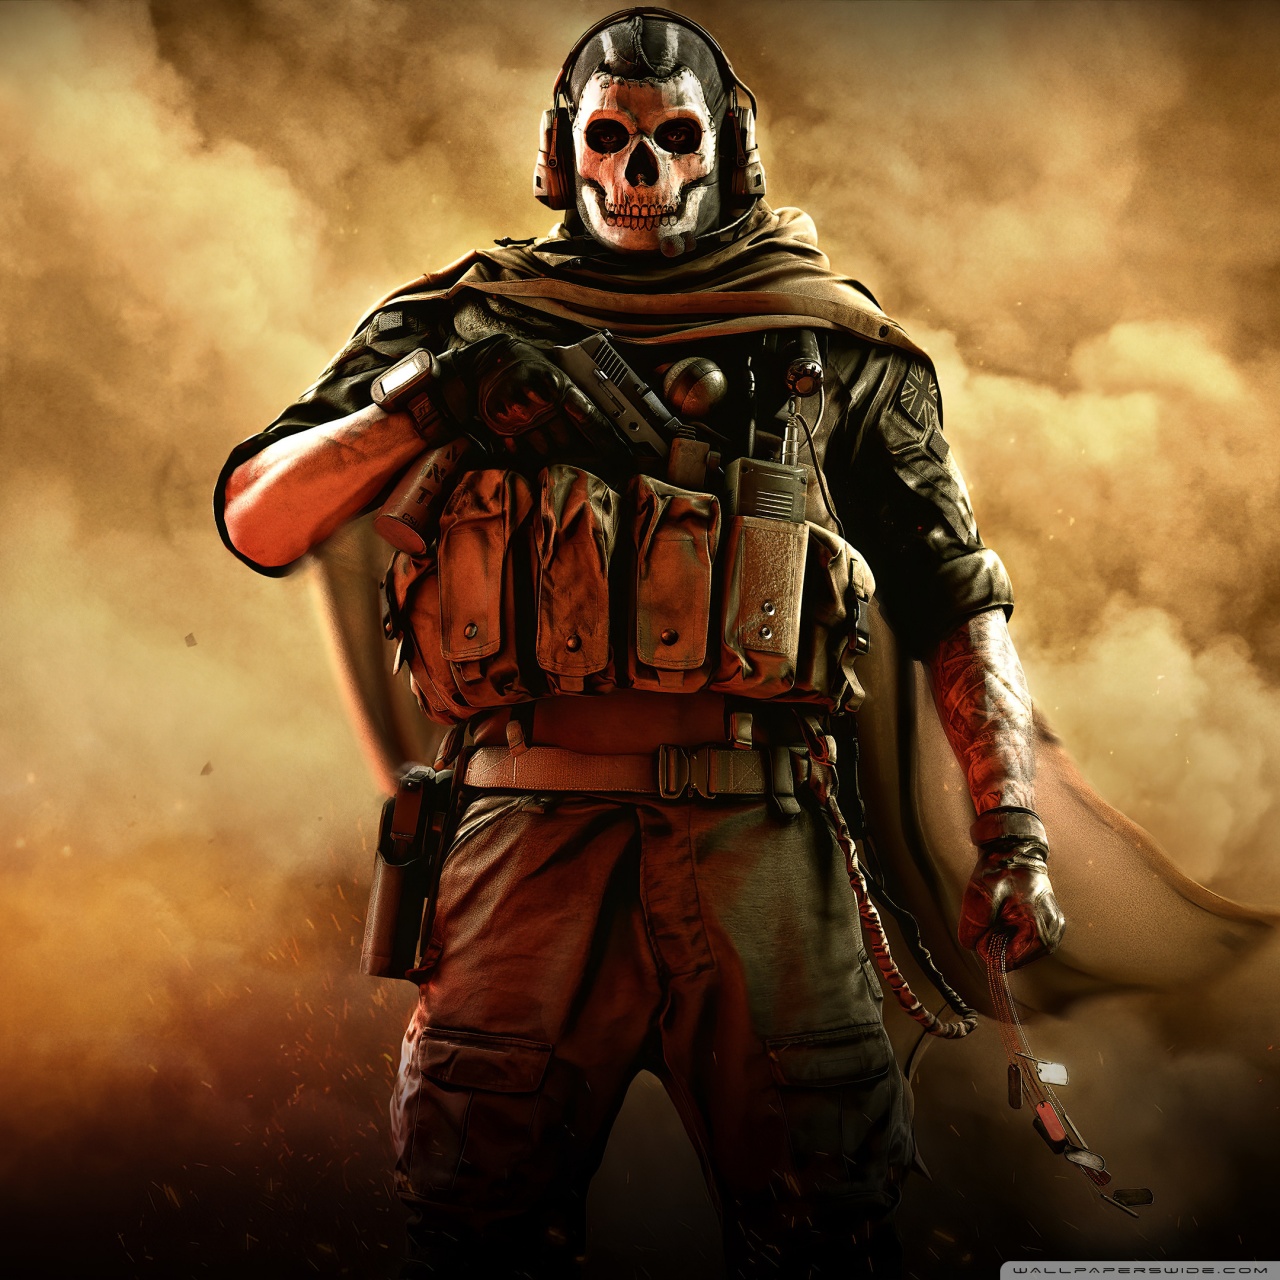 Call of Duty Modern Warfare 2019 Ghost Ultra HD Desktop Background Wallpaper for: Widescreen & UltraWide Desktop & Laptop, Multi Display, Dual Monitor, Tablet